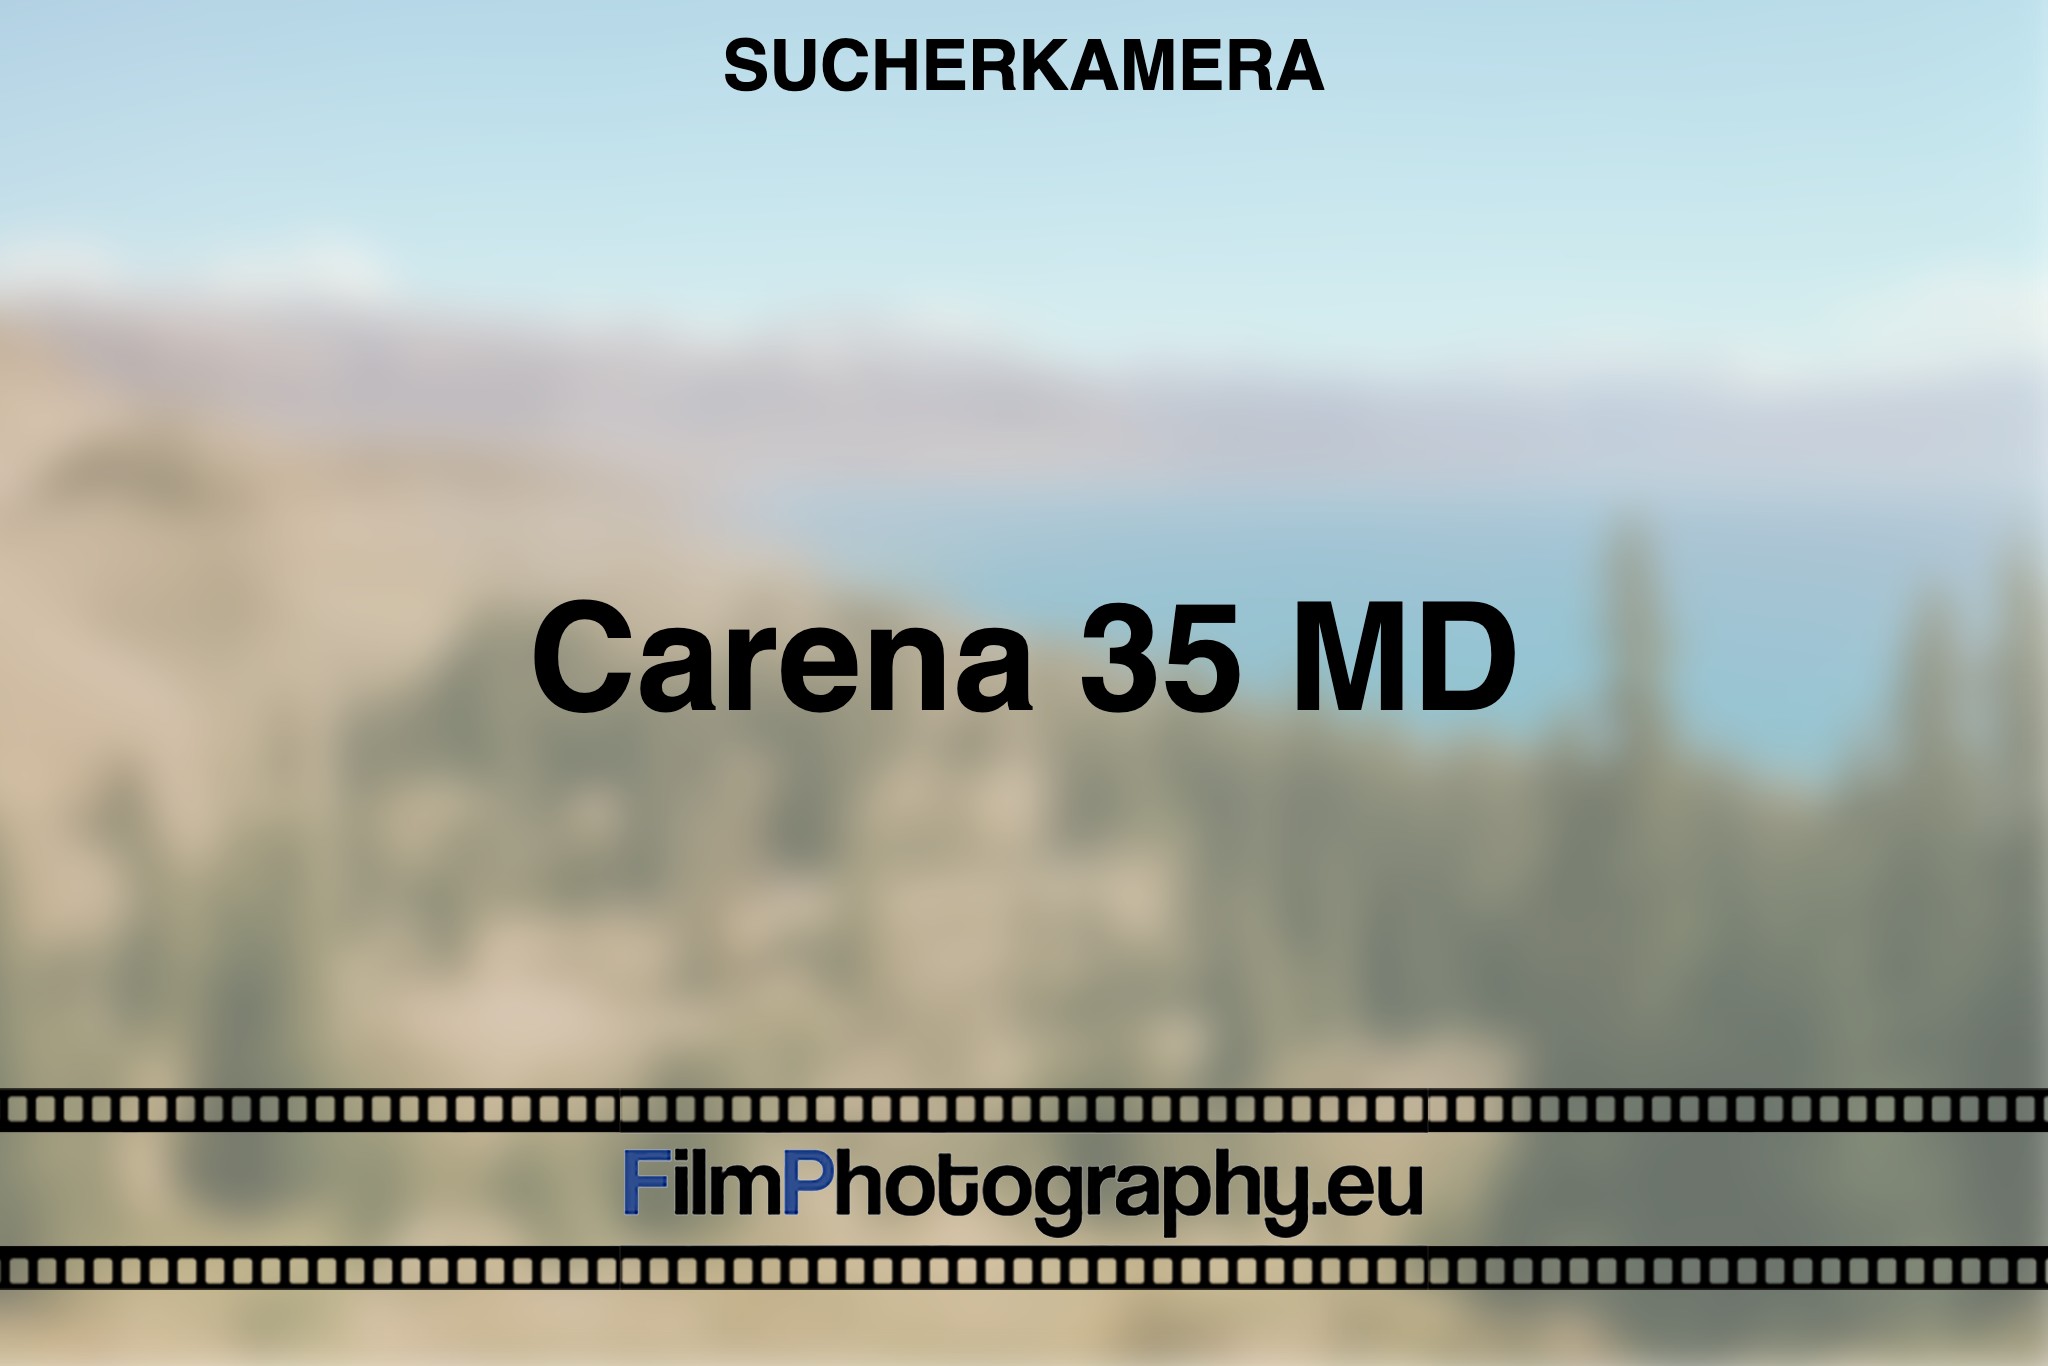 carena-35-md-sucherkamera-bnv